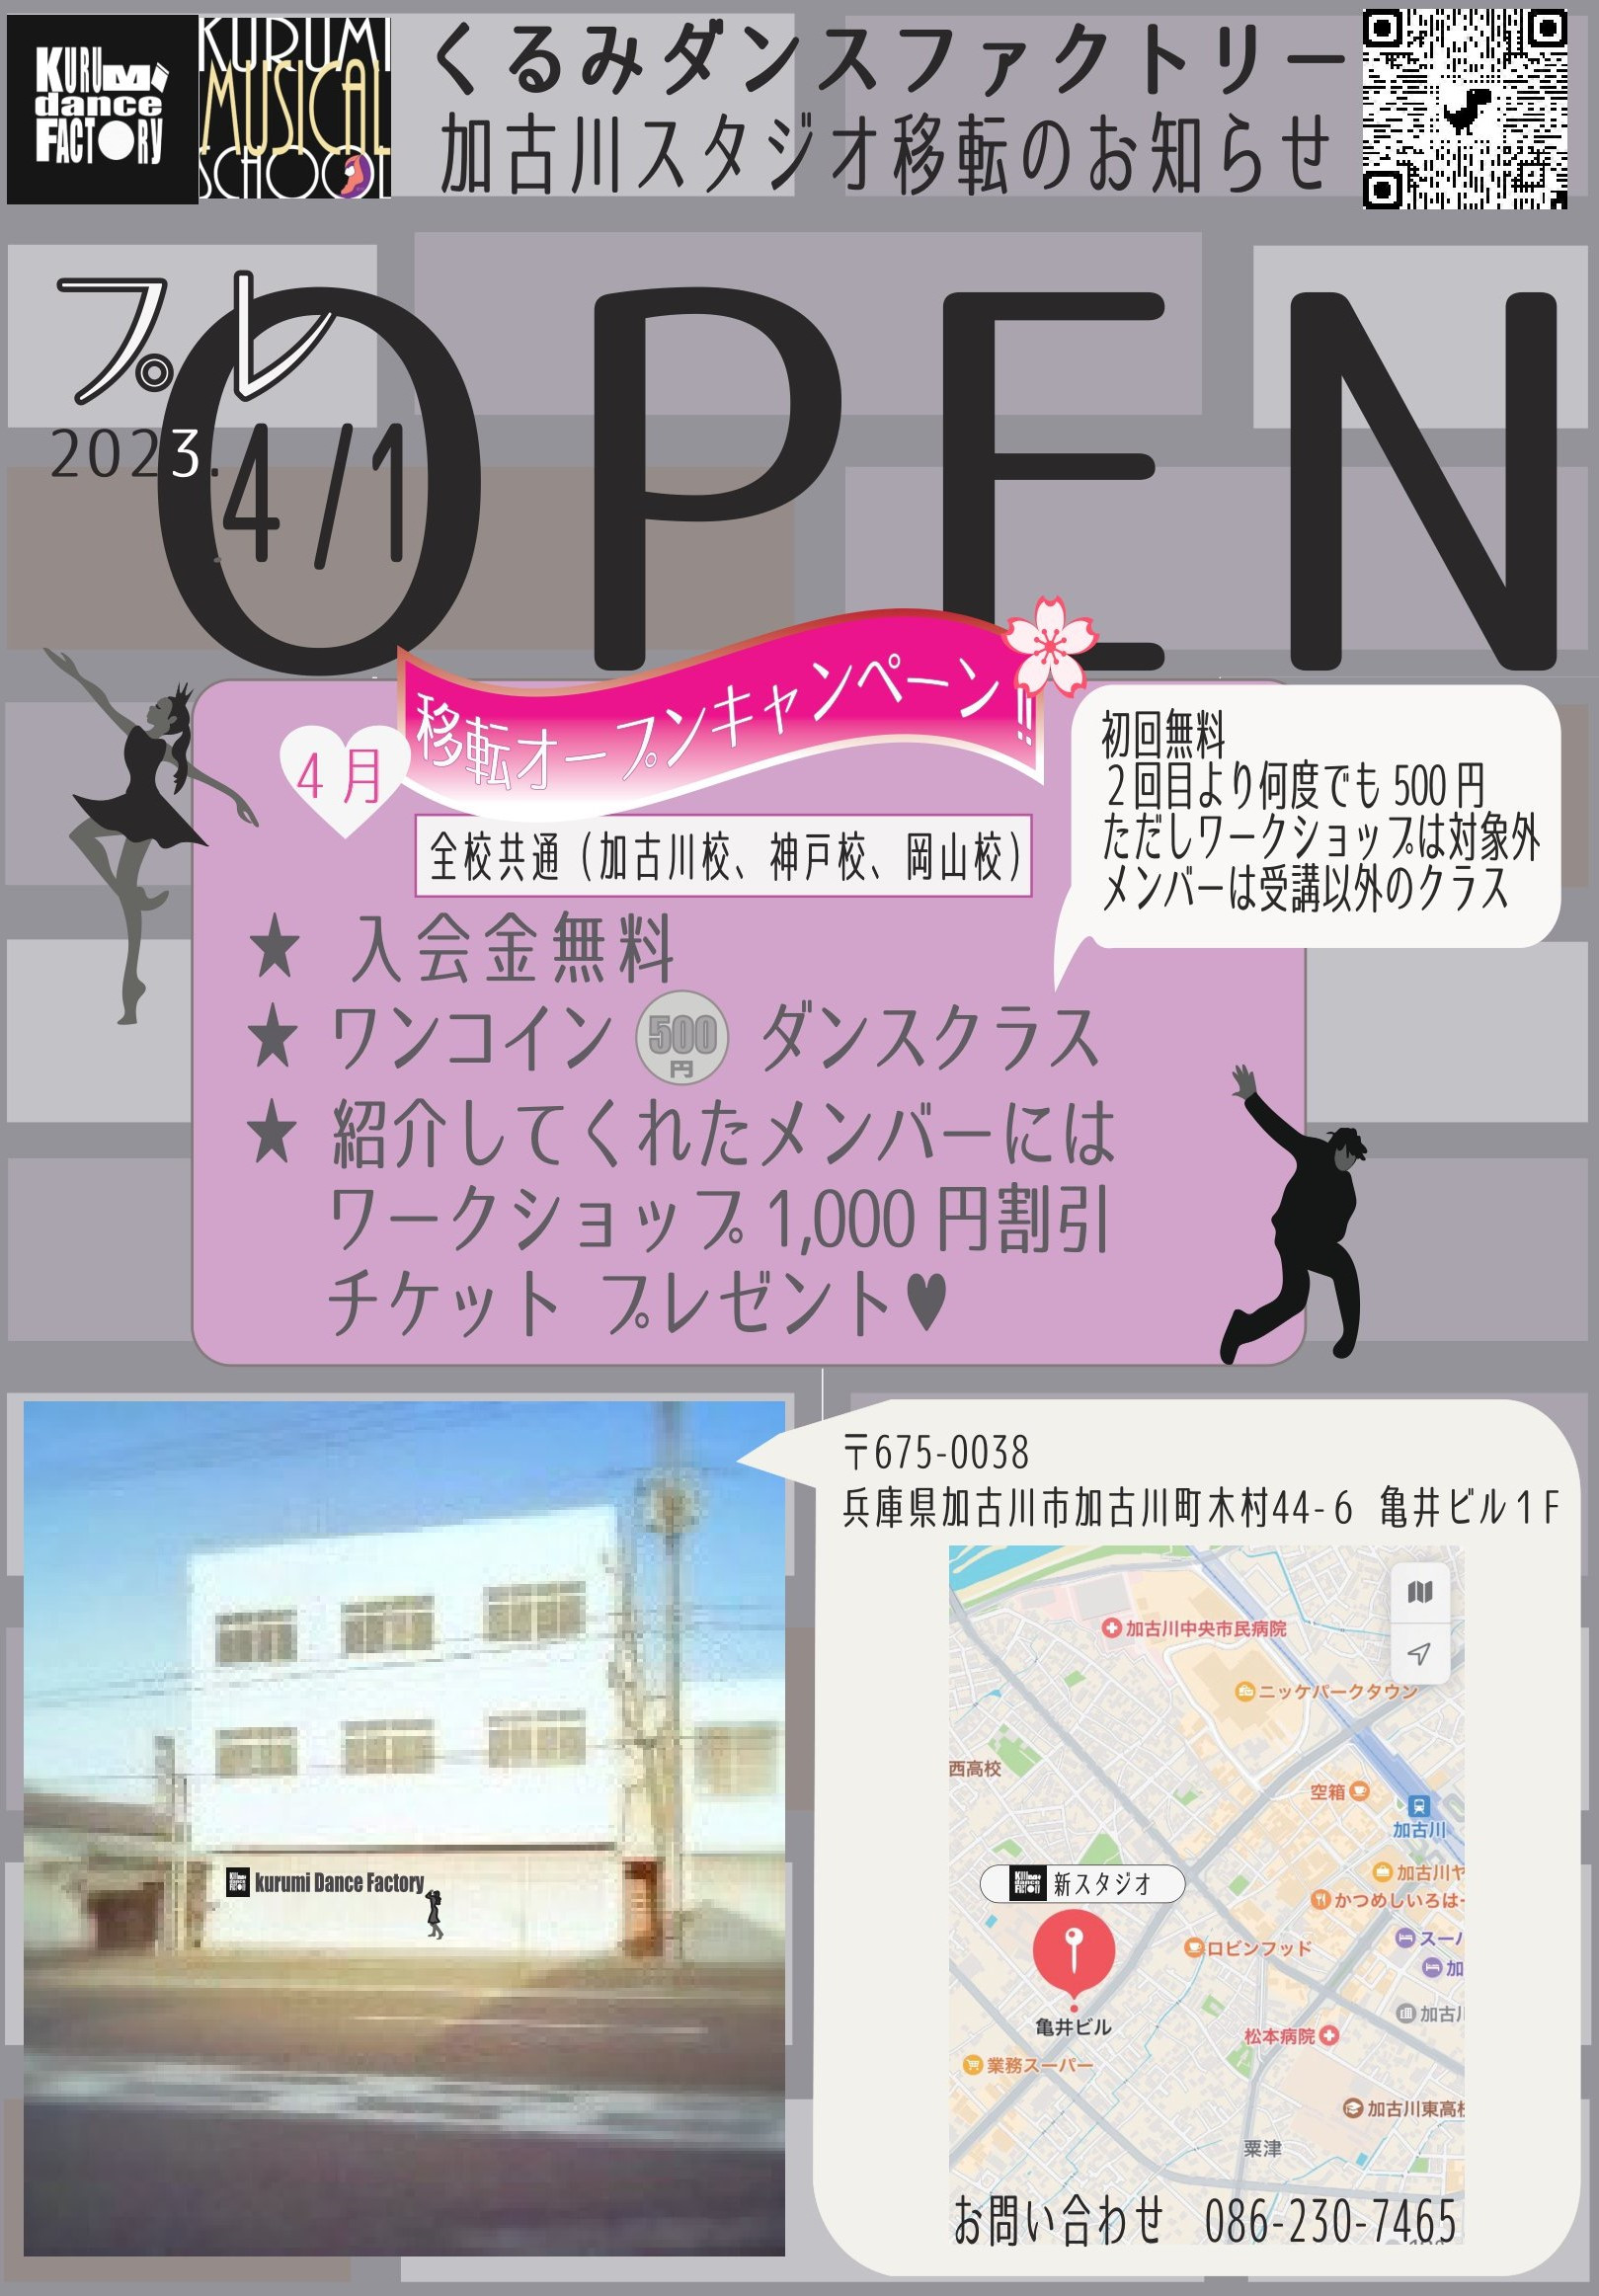 加古川スタジオ 移転・プレオープンキャンペーン